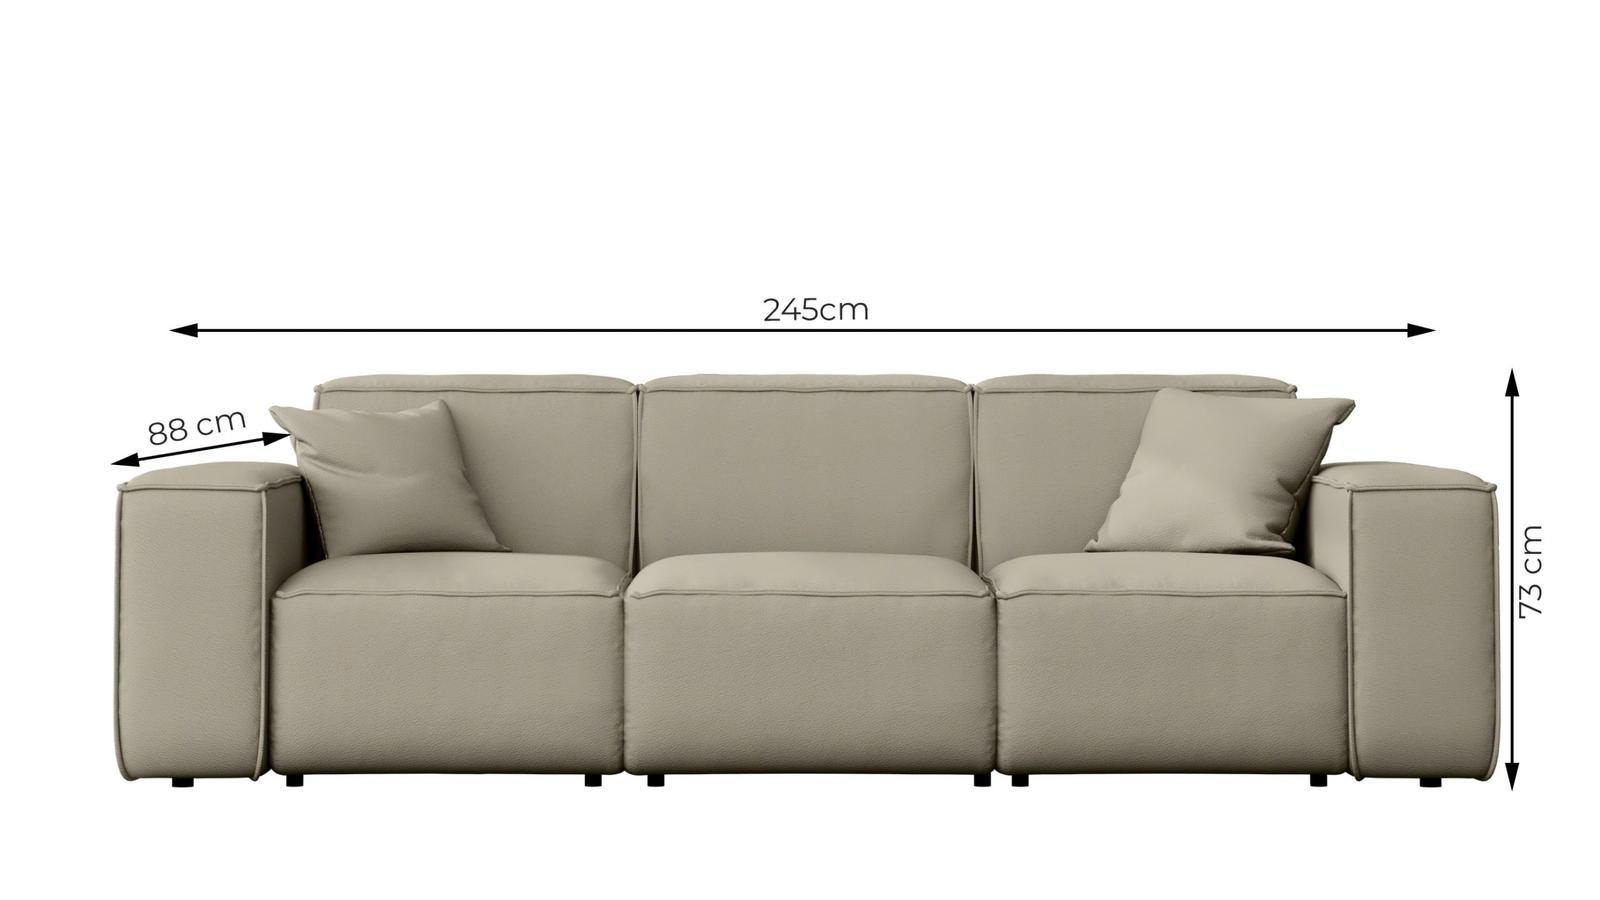 Sofa ogrodowa MALIBIU 245x103x88 cm wodoodporna UV 3-os + 2 poduszki do ogrodu ciemnoniebieska 2 Full Screen